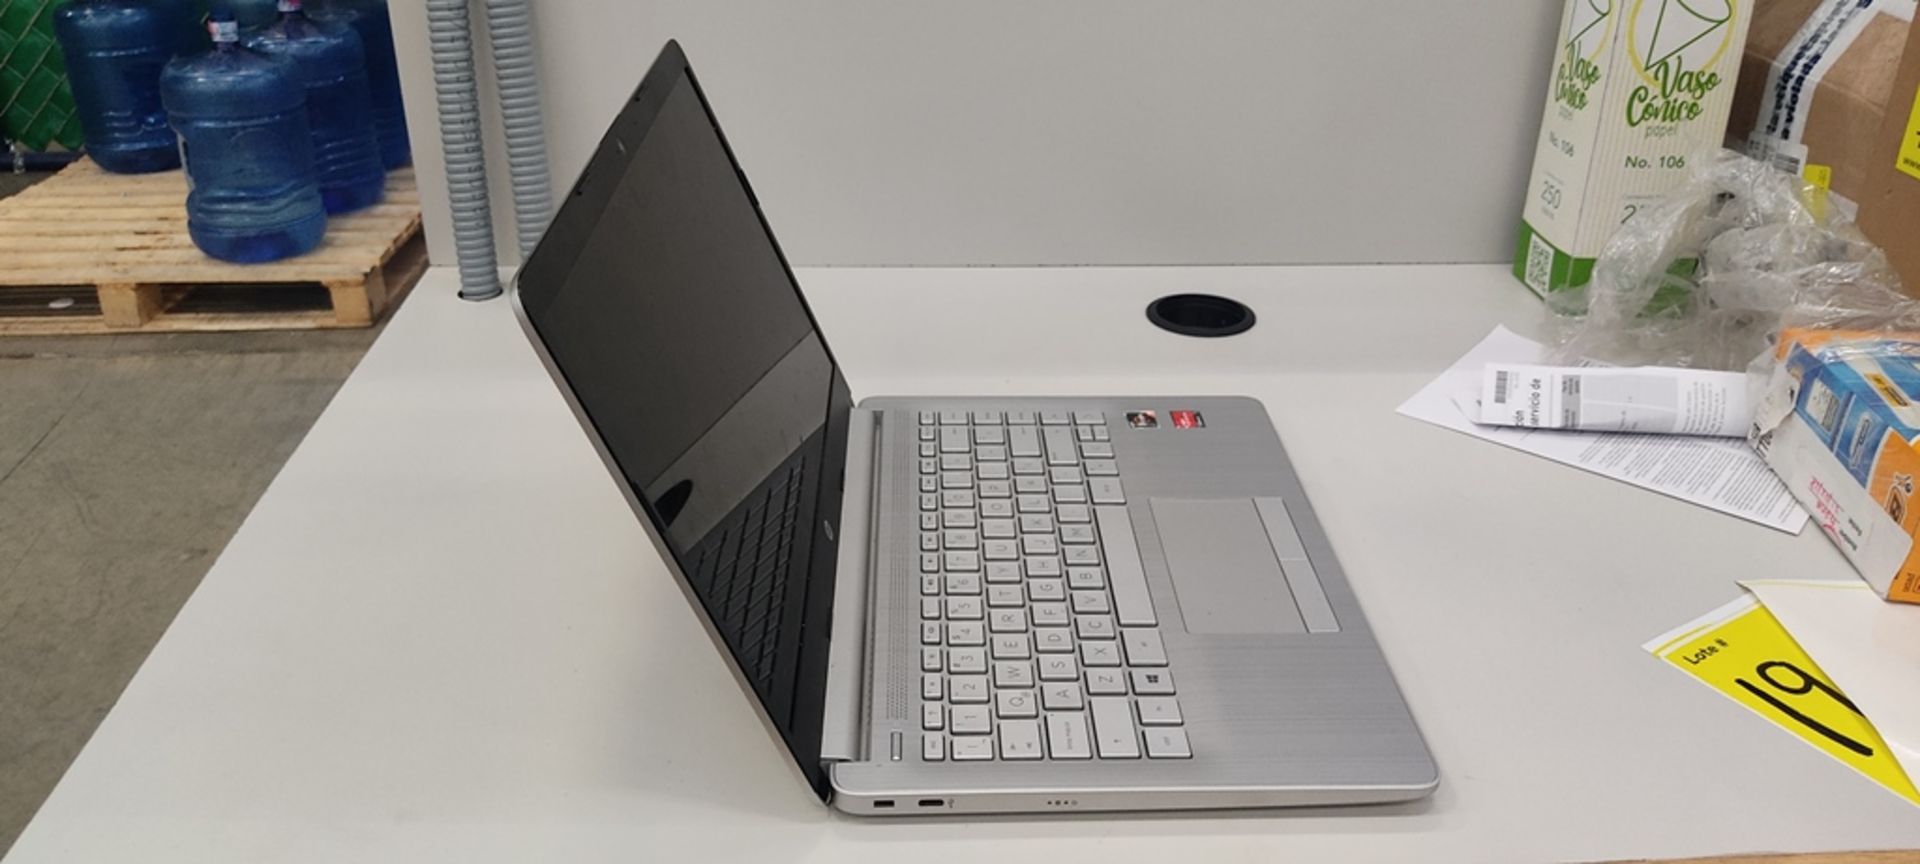 1 Computadora tipo laptop Marca Hp, Modelo RTL8821CE, Serie 14-DK1508La, Color Gris, unidad de esta - Image 7 of 12